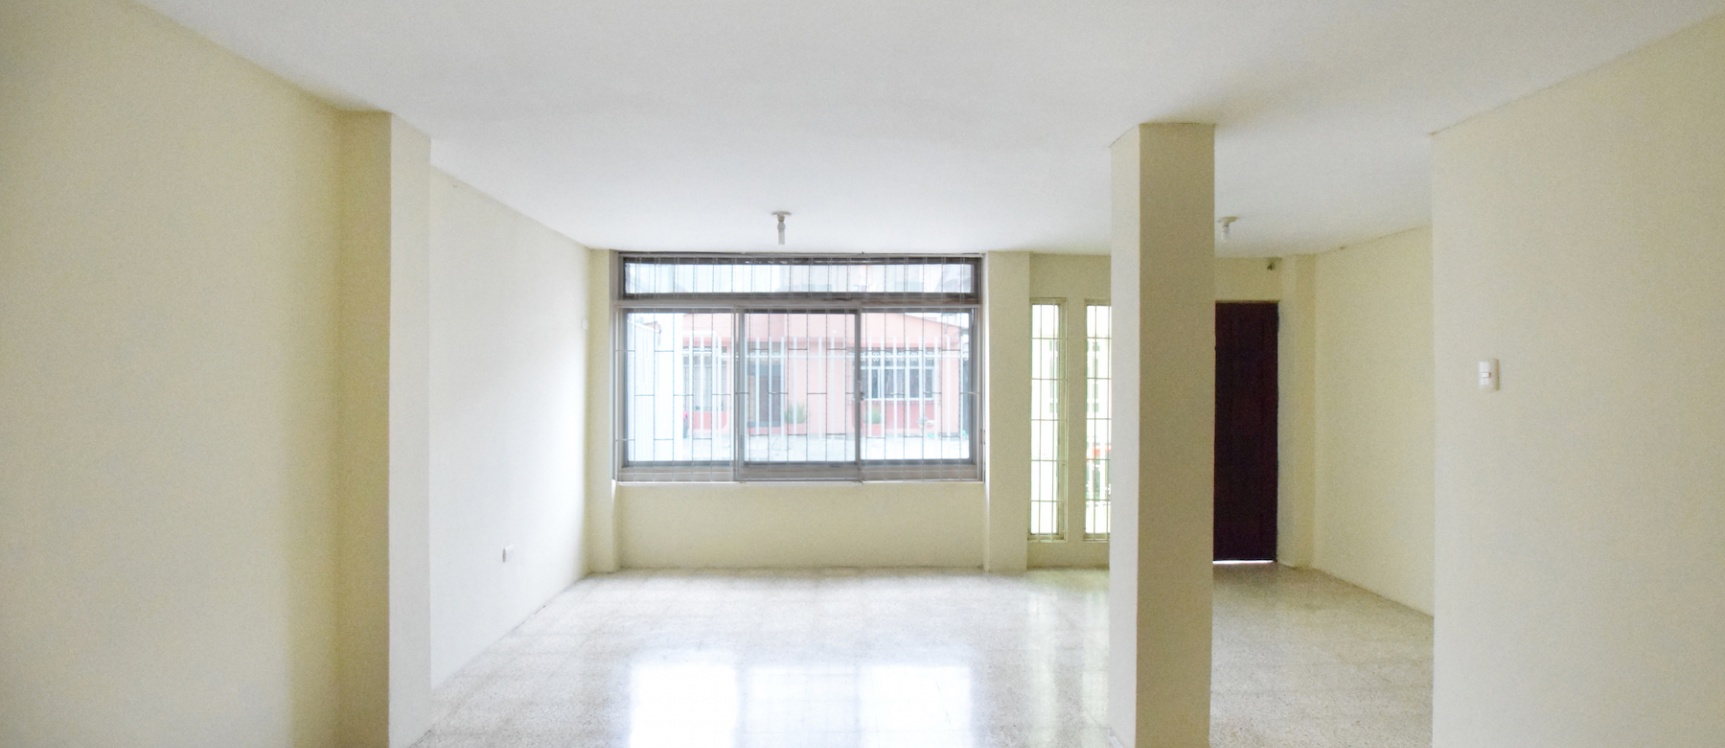 GeoBienes - Departamento en alquiler en la Kennedy, Norte de Guayaquil - Plusvalia Guayaquil Casas de venta y alquiler Inmobiliaria Ecuador